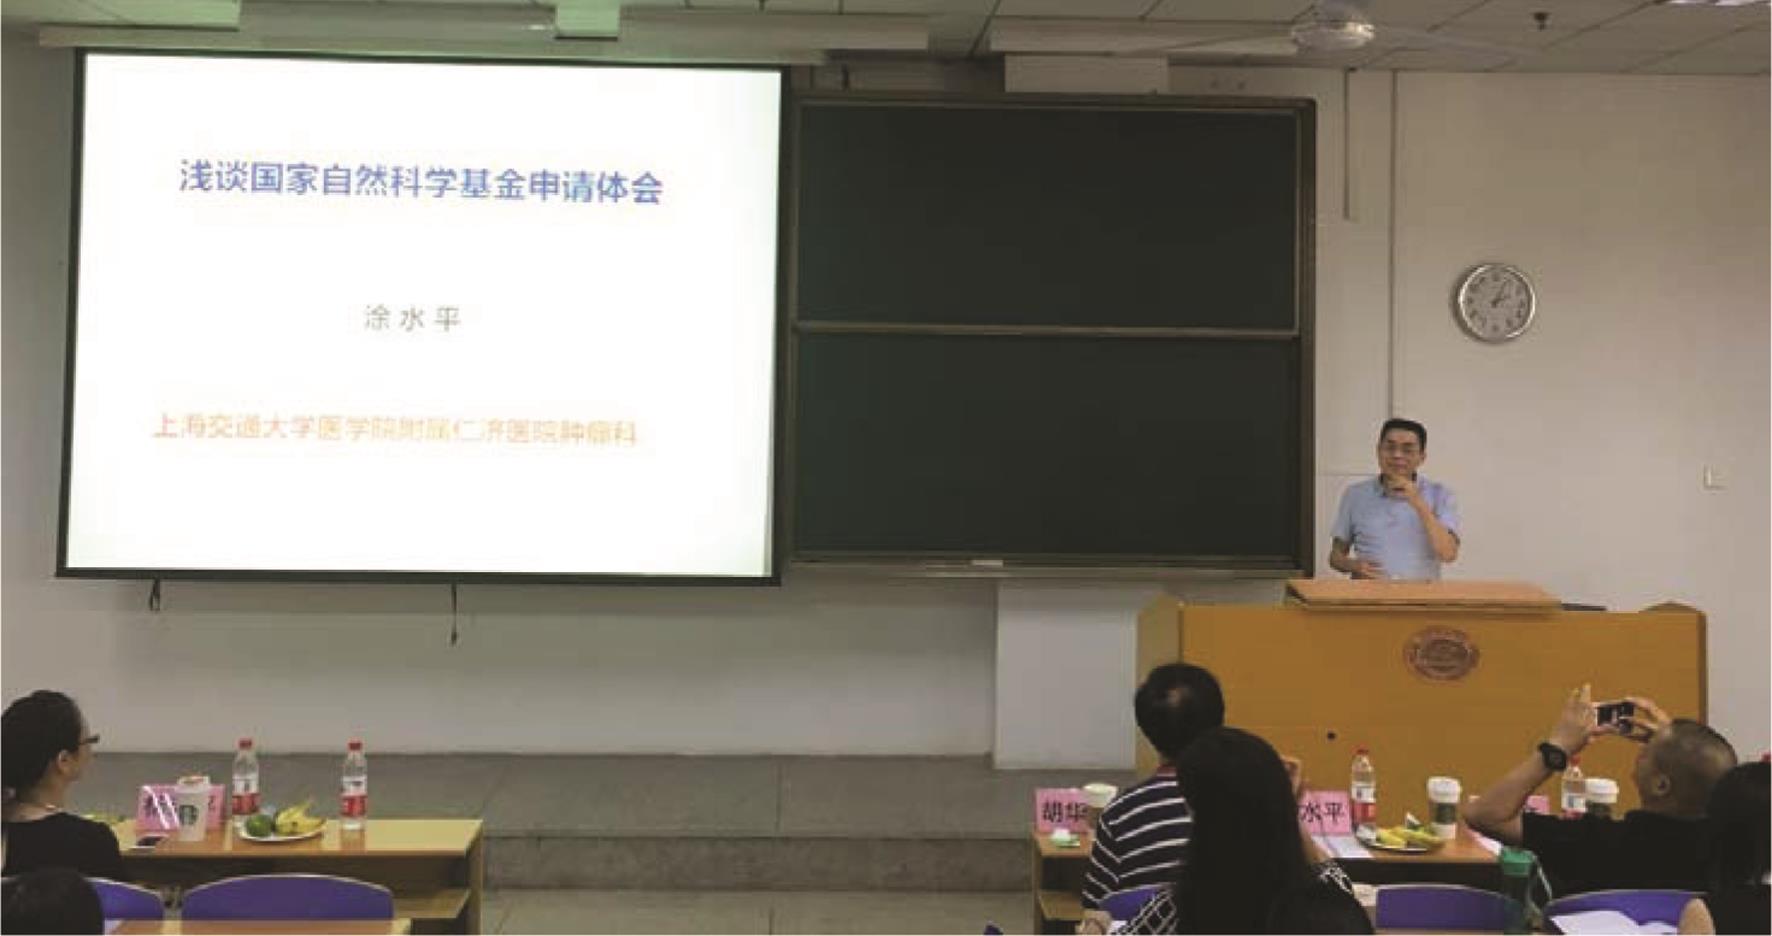 上海交通大学医学院附属仁济医院肿瘤科副主任涂水平授课。